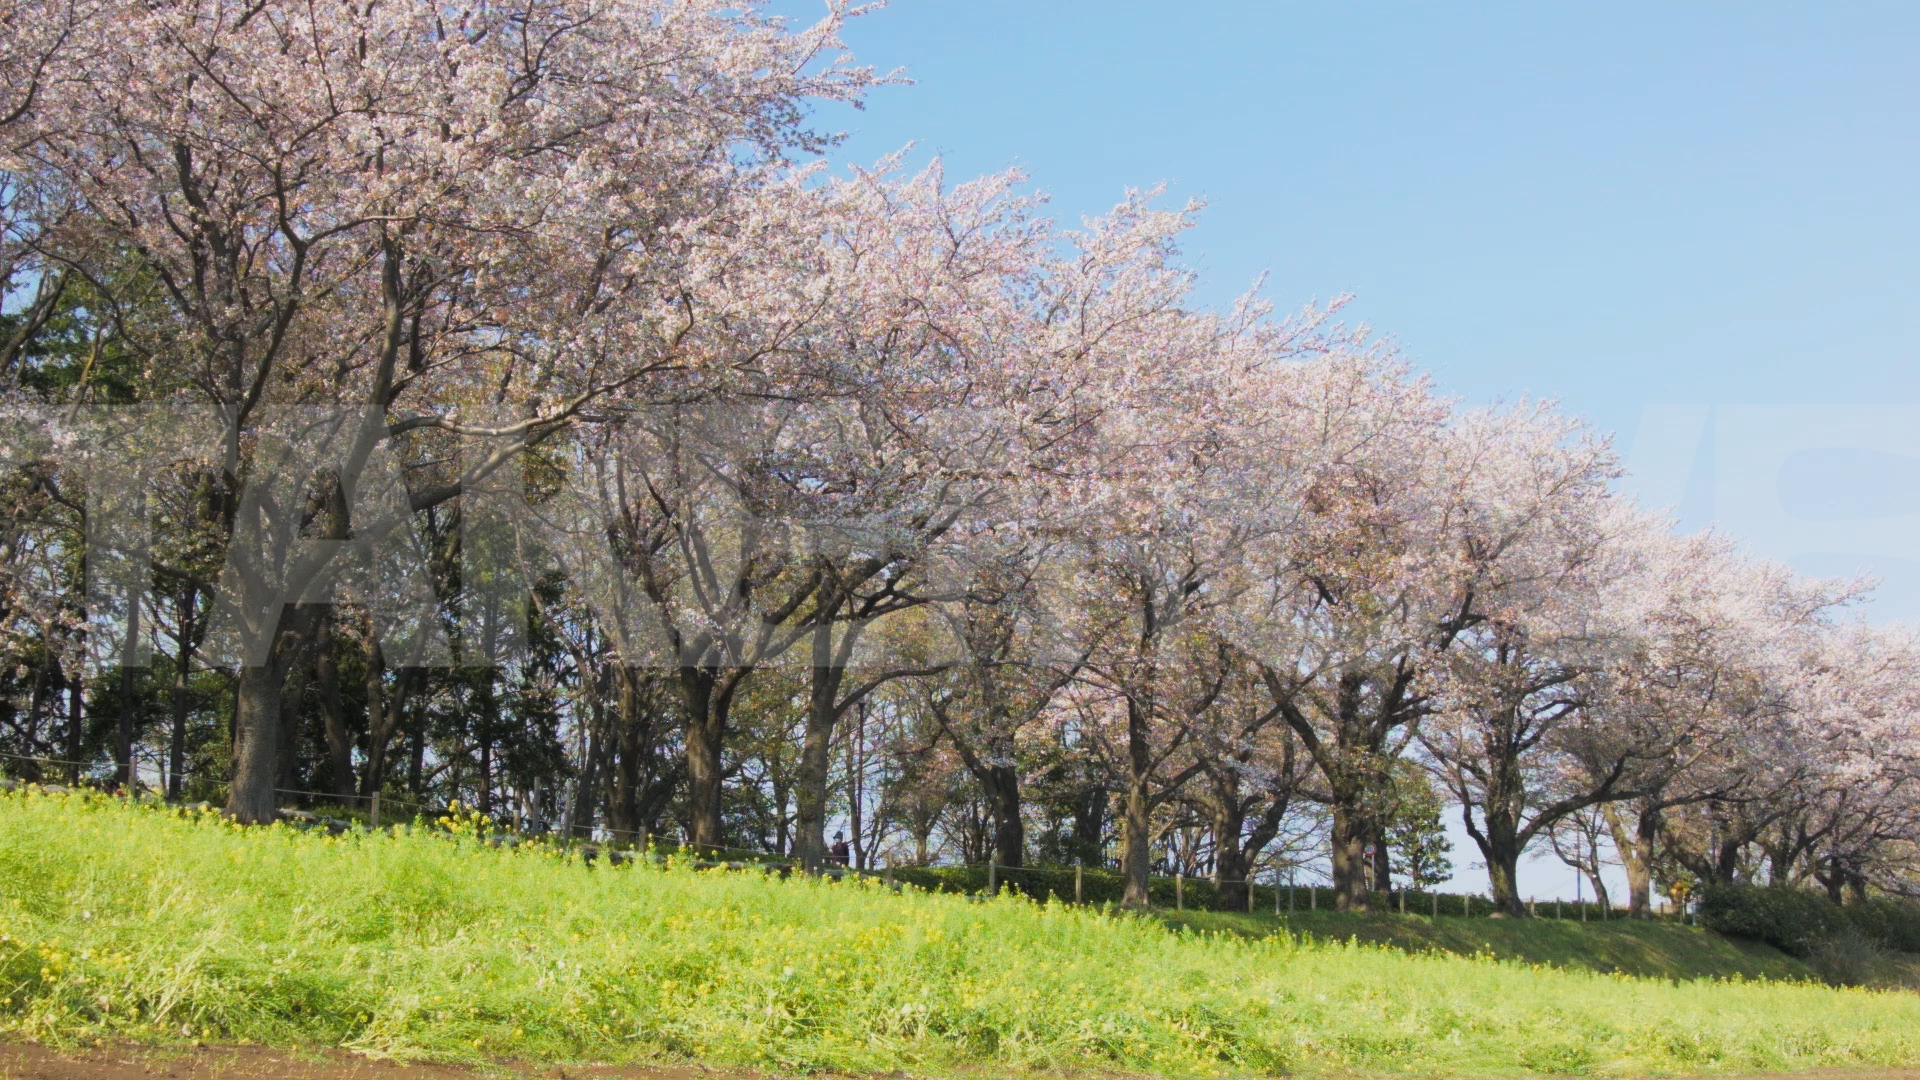 動画素材 M0159 桜並木と菜の花の組み合わせが美しい春の風景のhd動画素材 商用利用可能で無料でダウンロードできる フリー 動画 写真 ｃｇ素材のテイクムーヴ